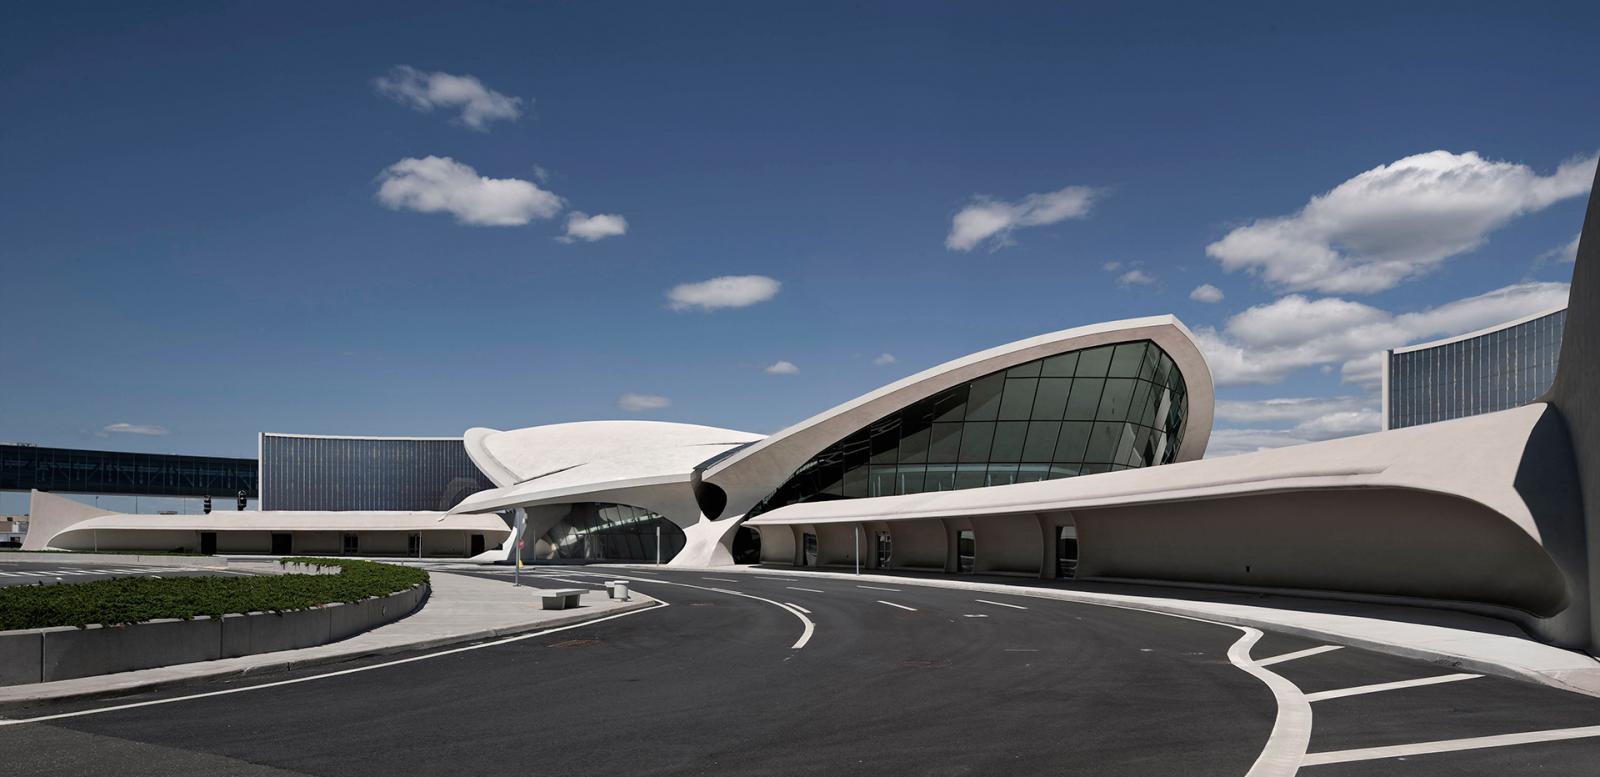 Терминал по проекту Ээро Сааринена стал отелем премиум-класса